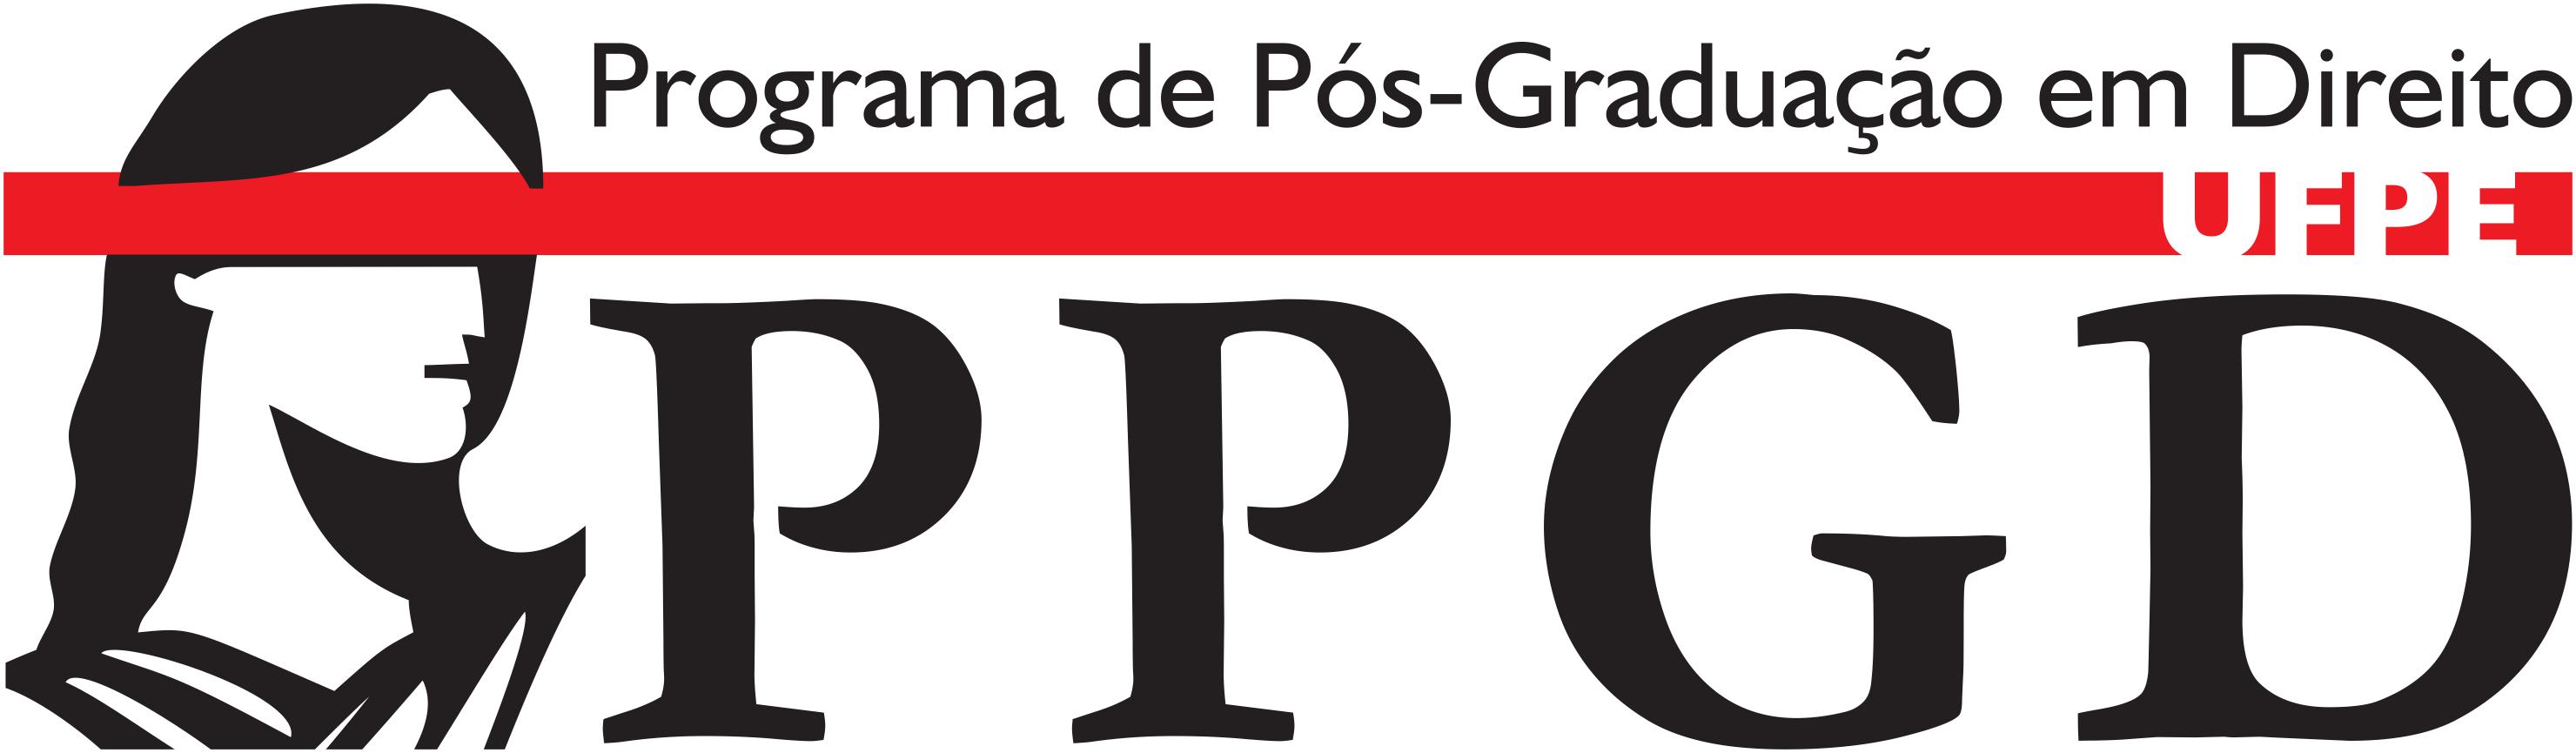 Logo do PPGD